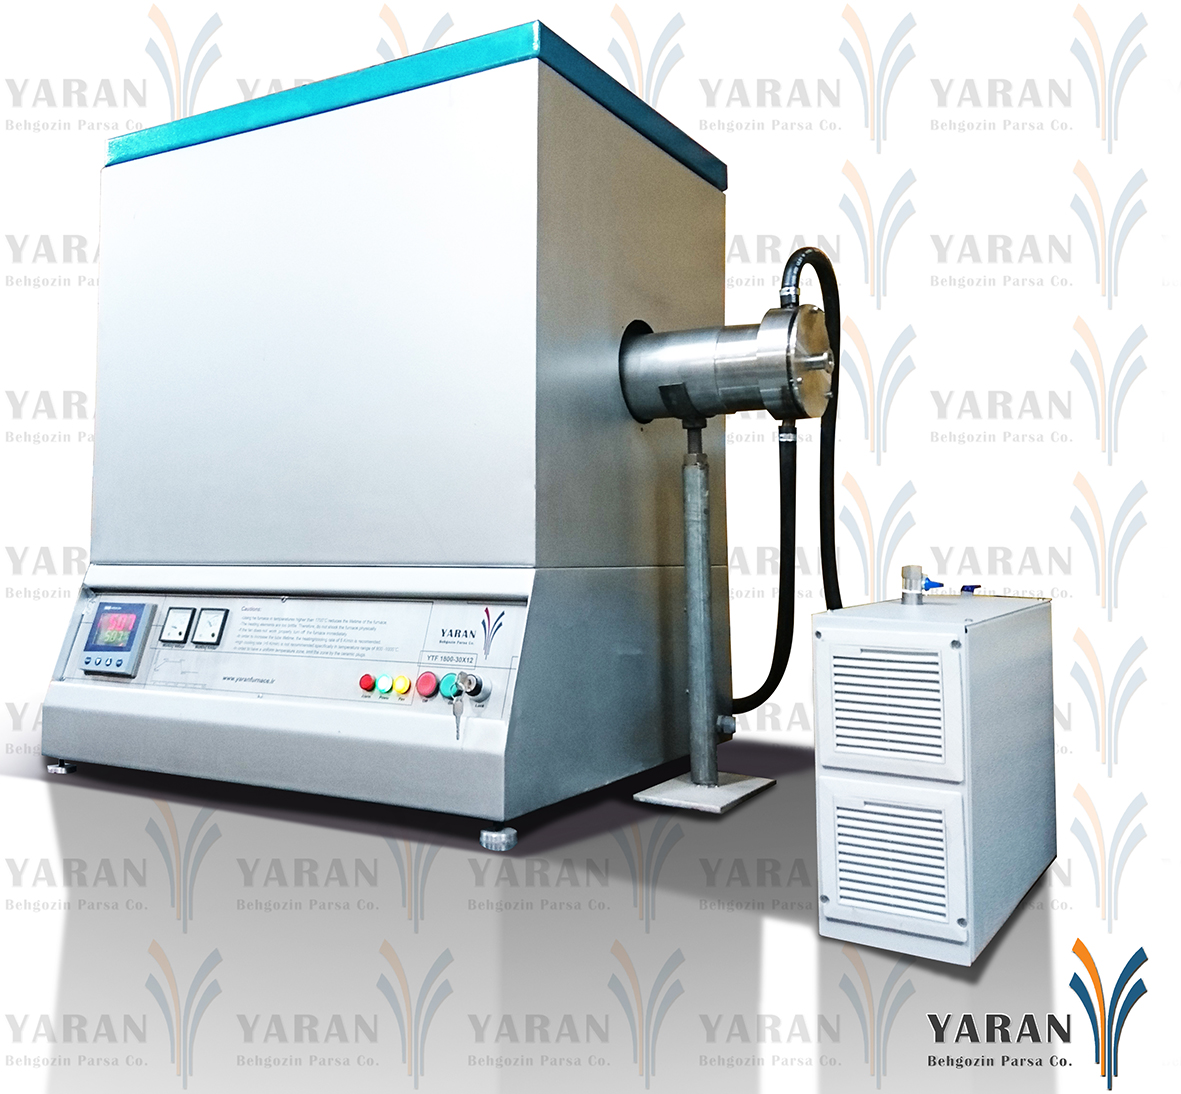 سیستم CVD با میکسر گاز 1800 درجه (با قطر تیوب 12 سانتی متر)